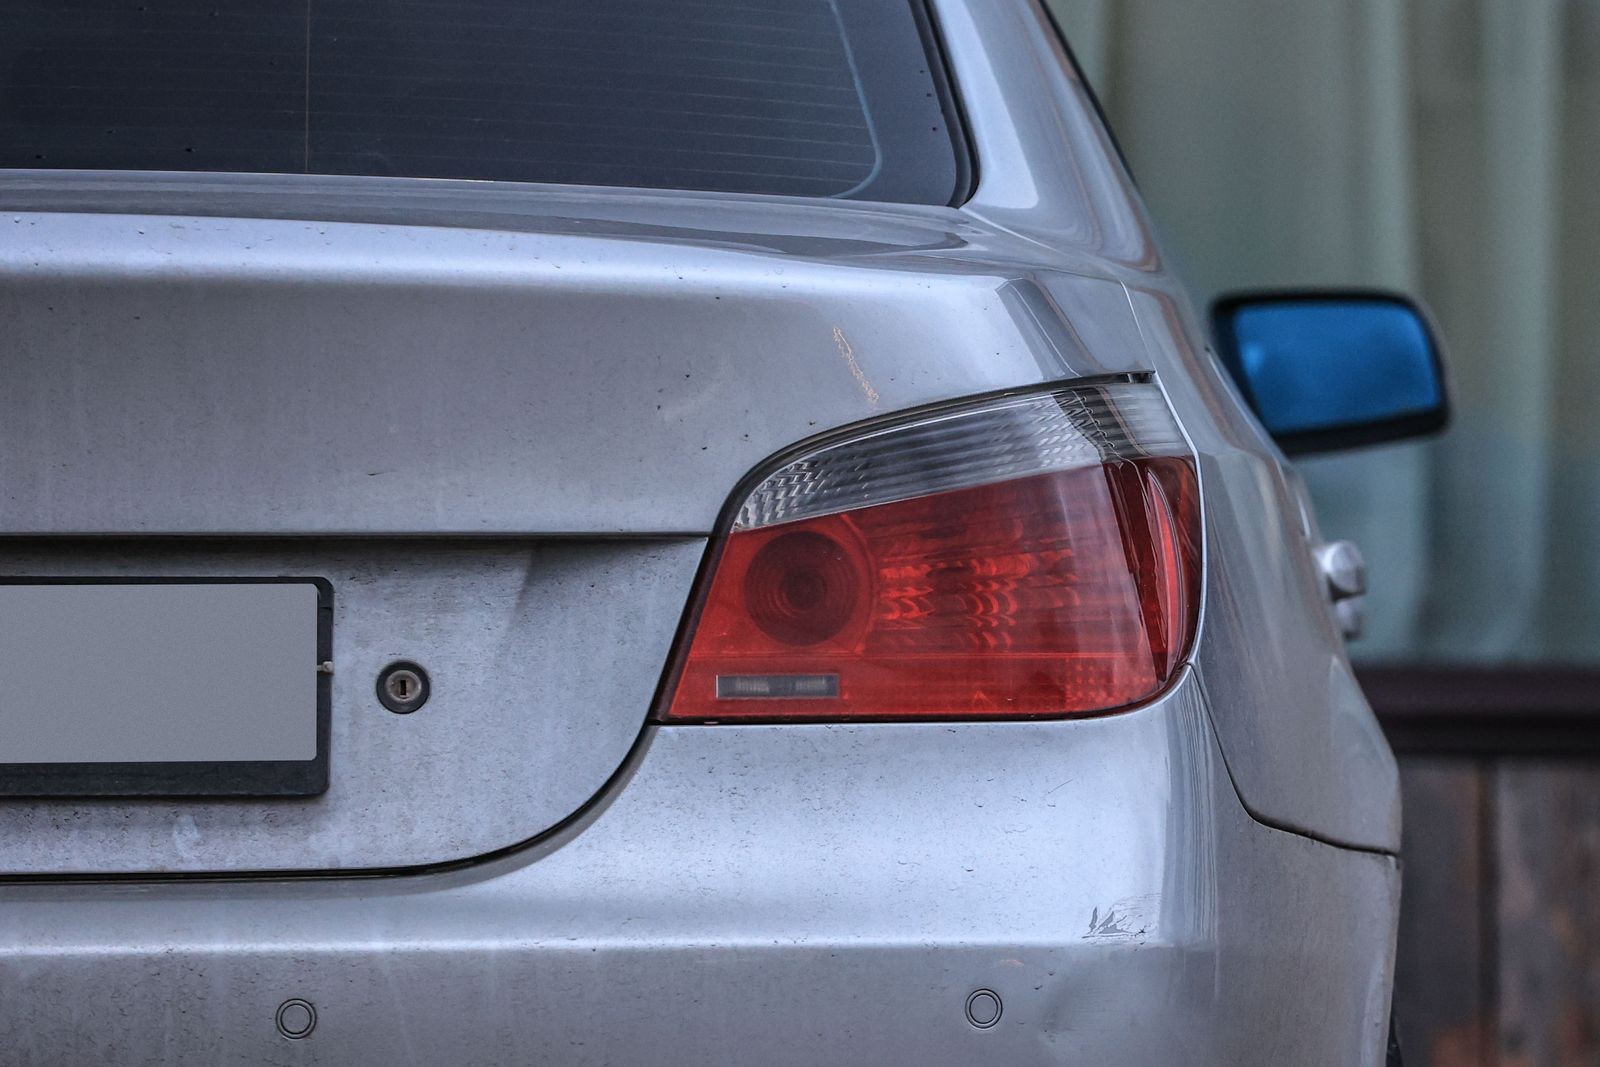 BMW 5 series V E60 с пробегом: сложный алюминиевый кузов, море электроники и пожароопасный «плюс»